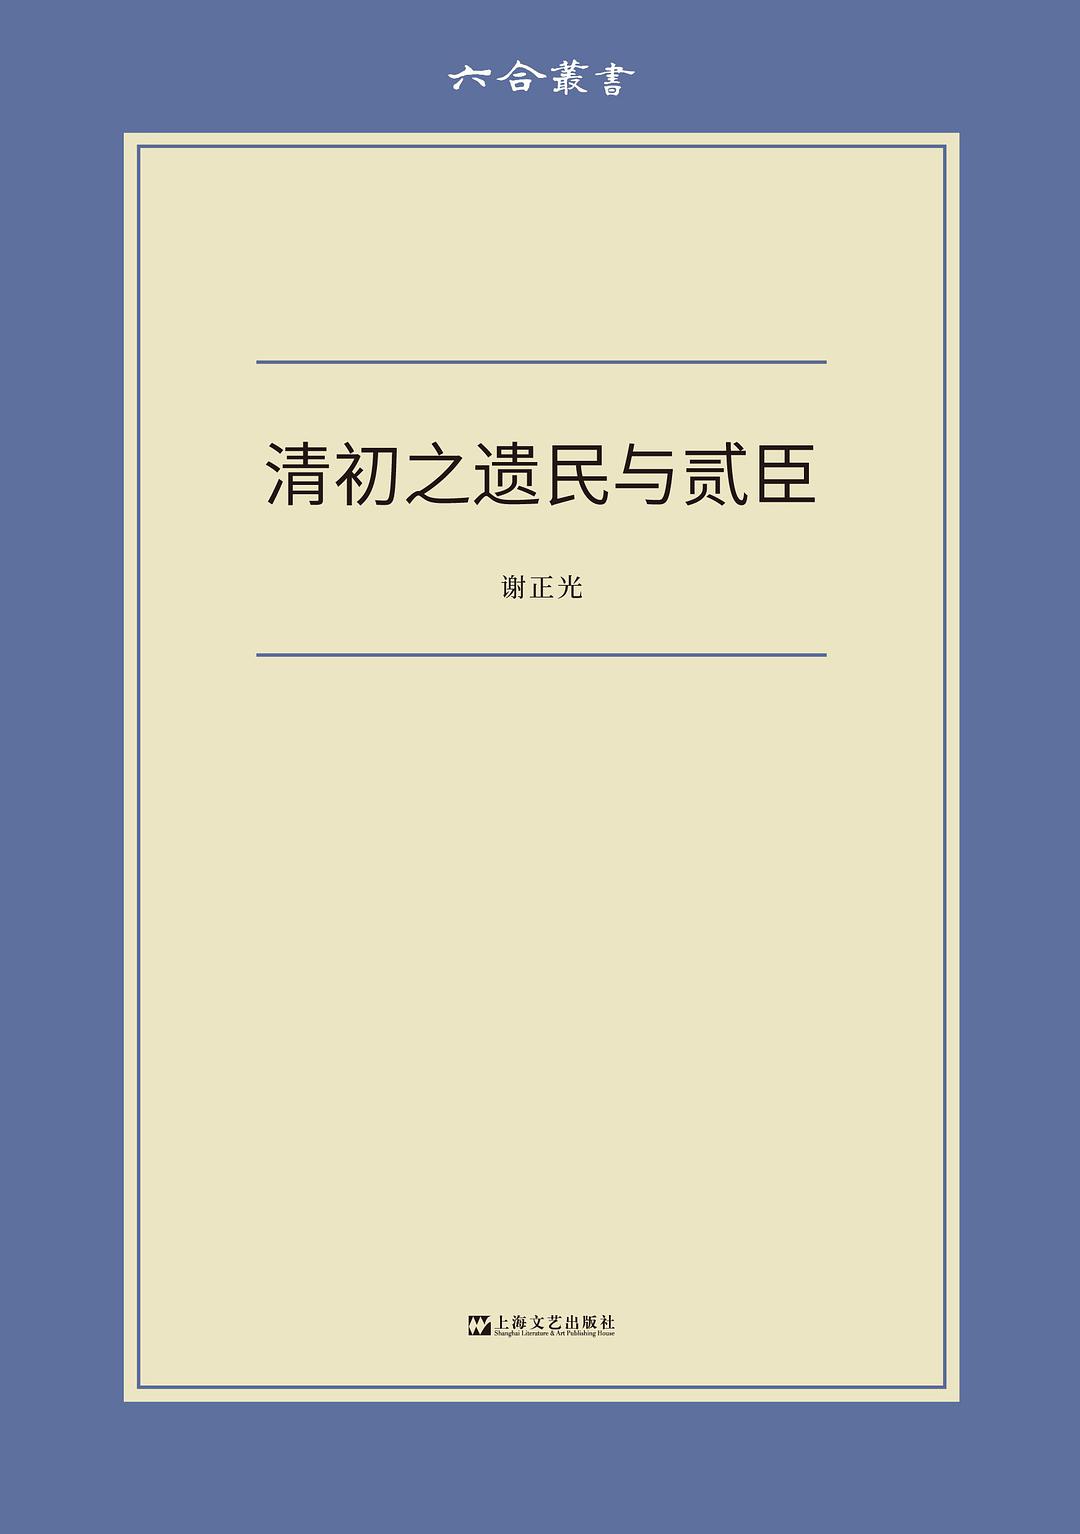 《清初之遗民与贰臣》，谢正光著，上海文艺出版社，2021年7月版，362页，54.00元